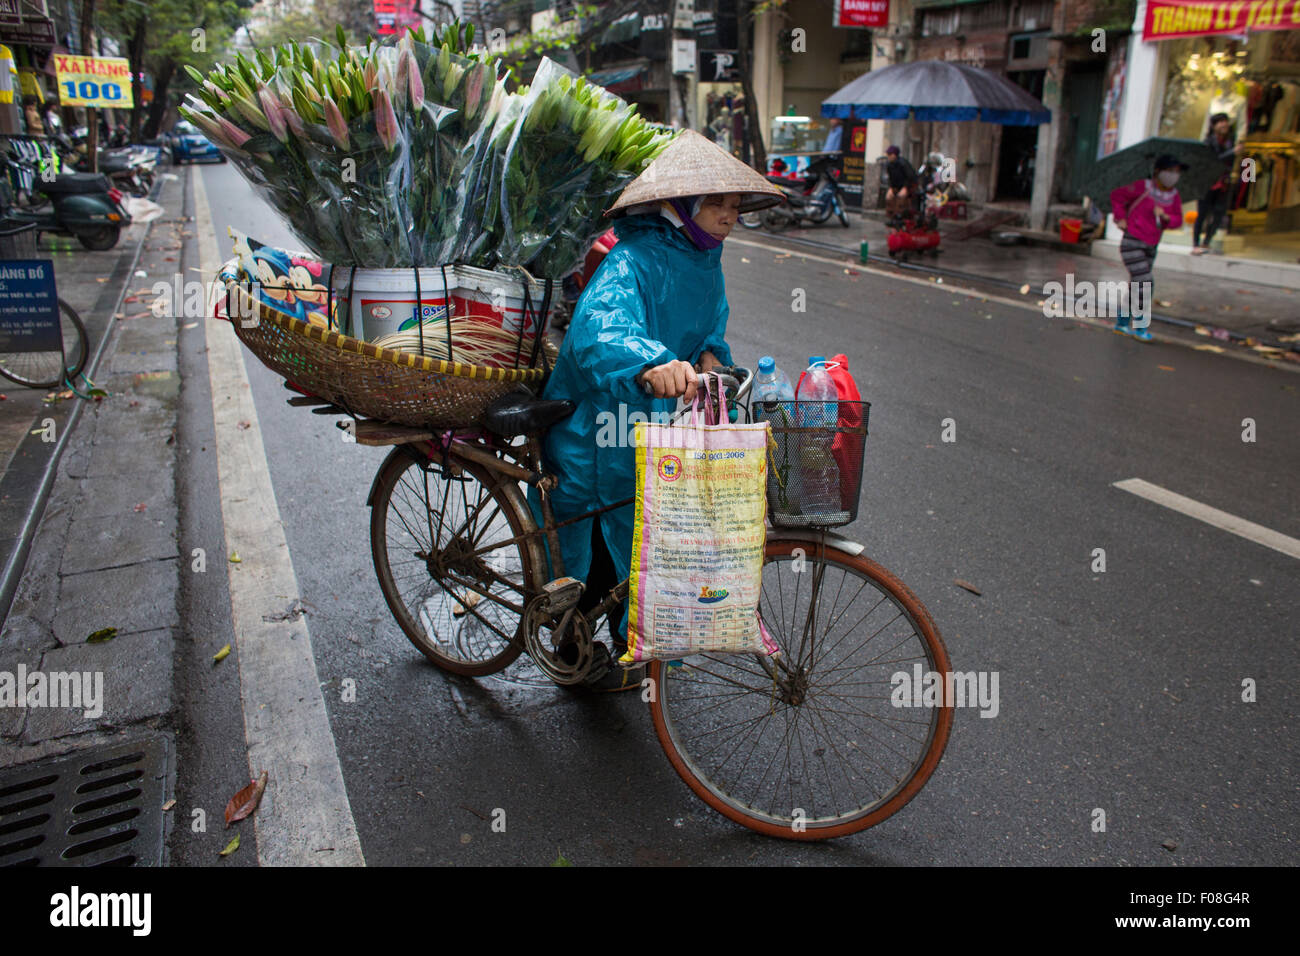 Vendeur vente de fleurs à partir de son mobile location shop Banque D'Images